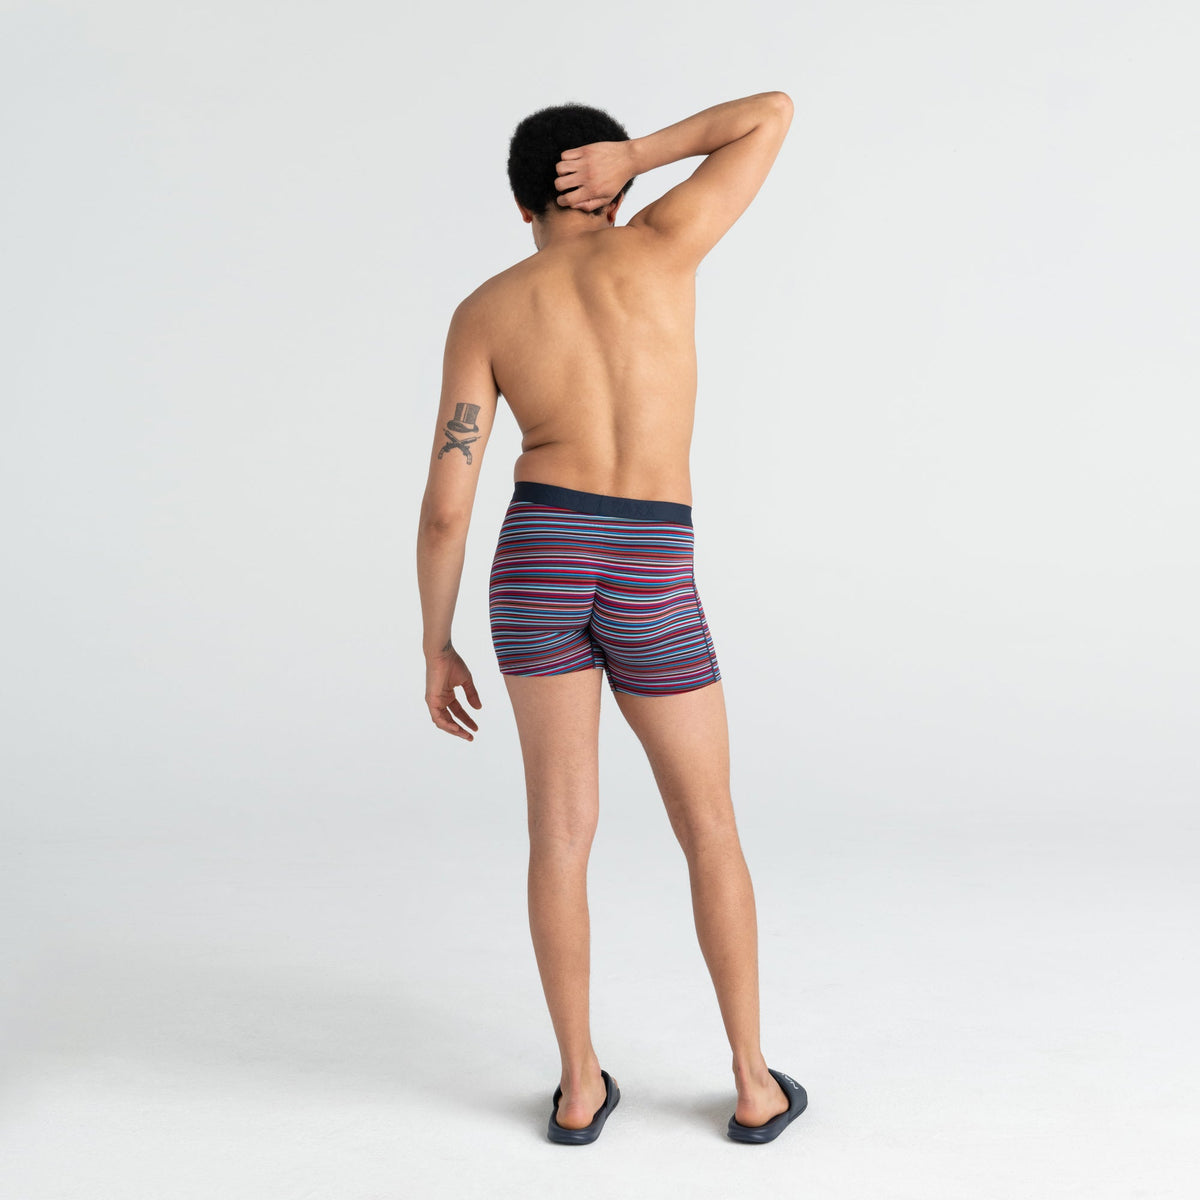 Sous-vêtement pour homme par Saxx | SXBM35 VBB | Boutique Vvög, vêtements mode pour hommes